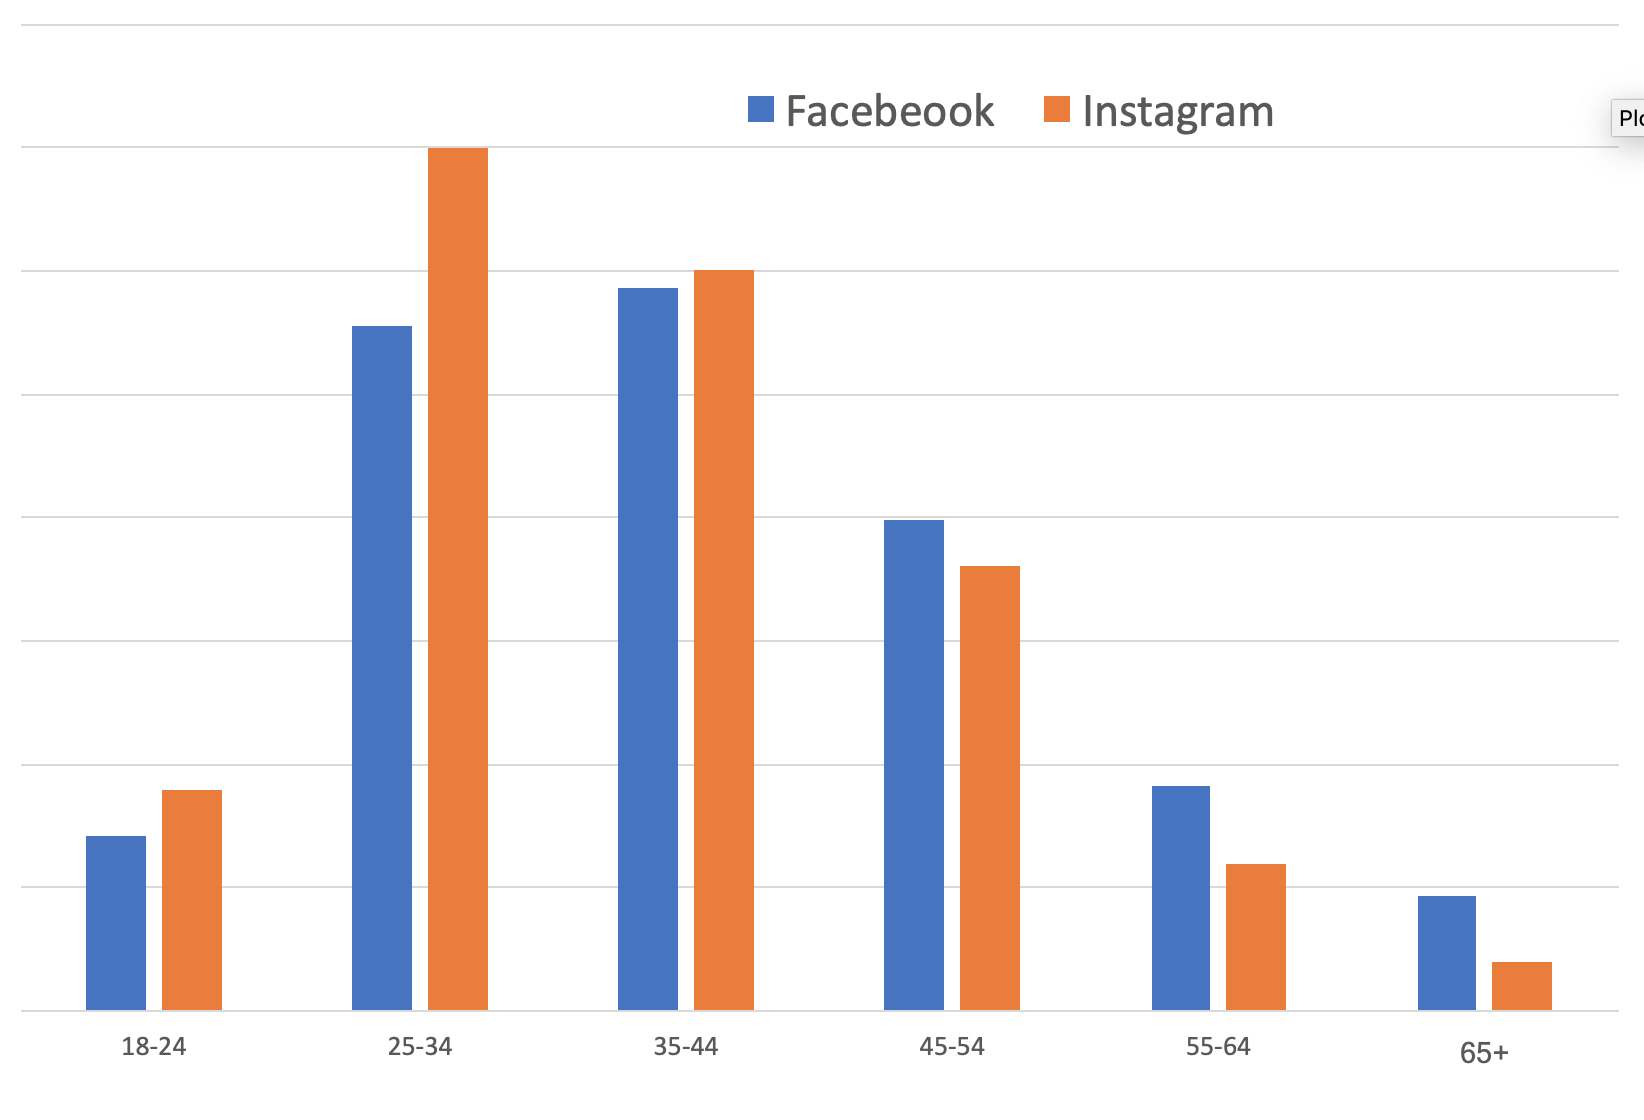 Facebook and Instagram demographics